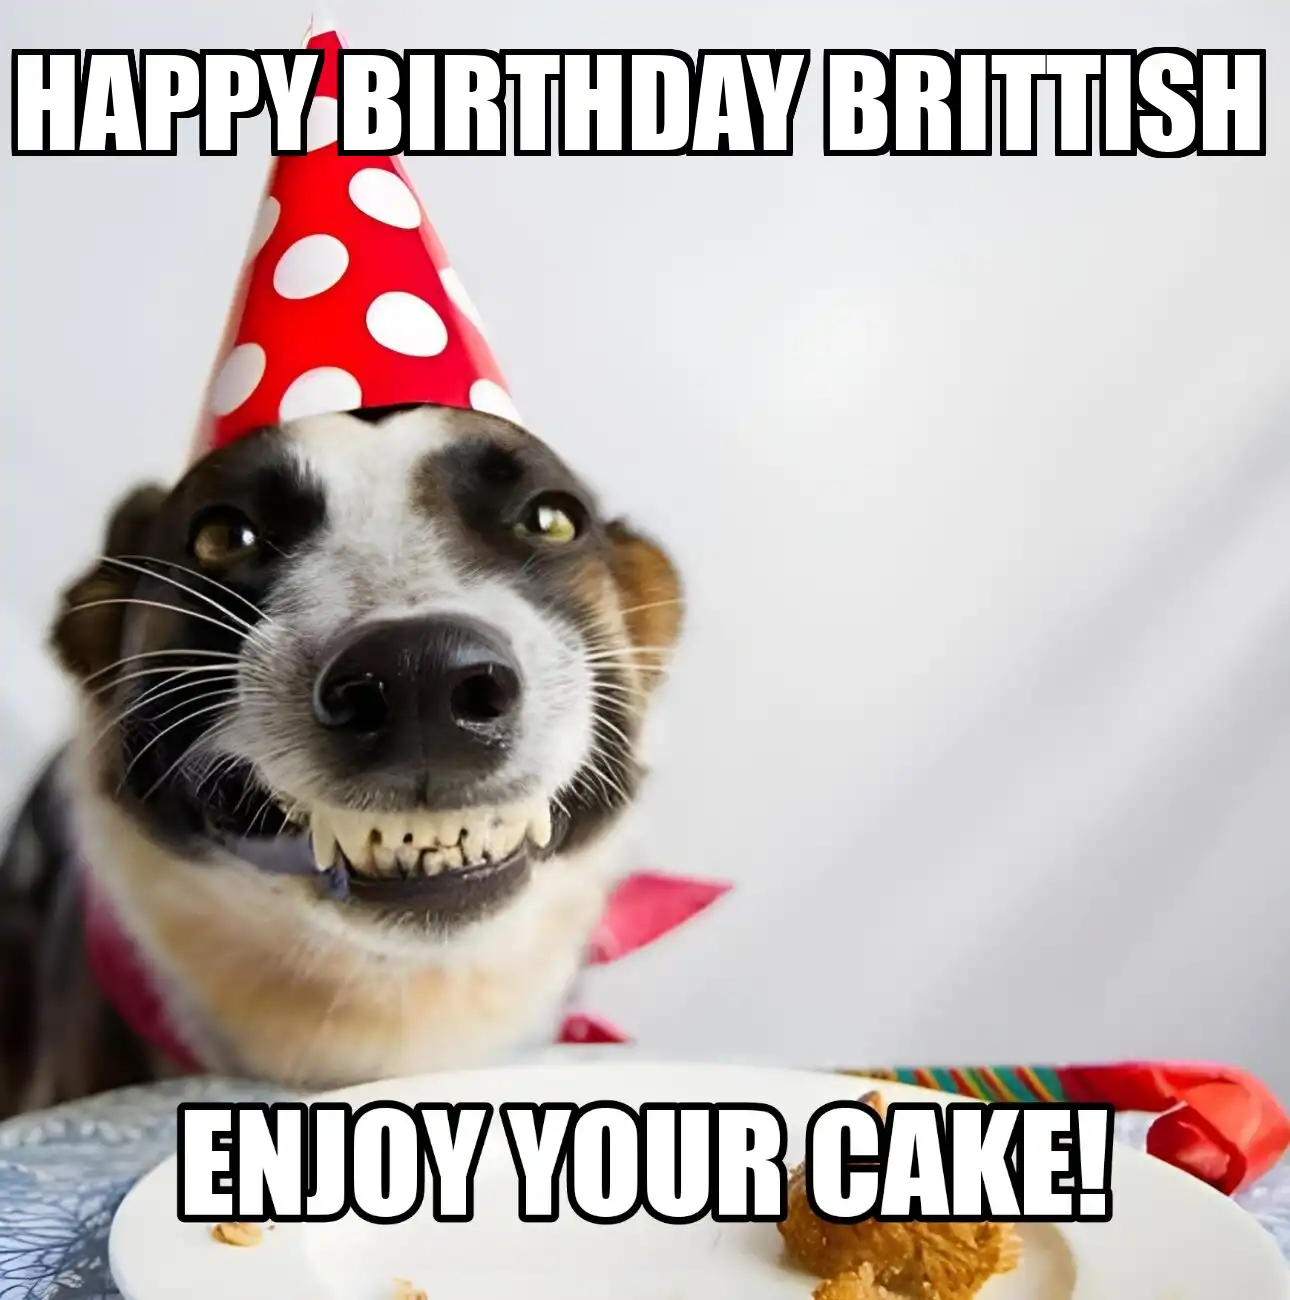 Happy Birthday Brittish Enjoy Your Cake Dog Meme